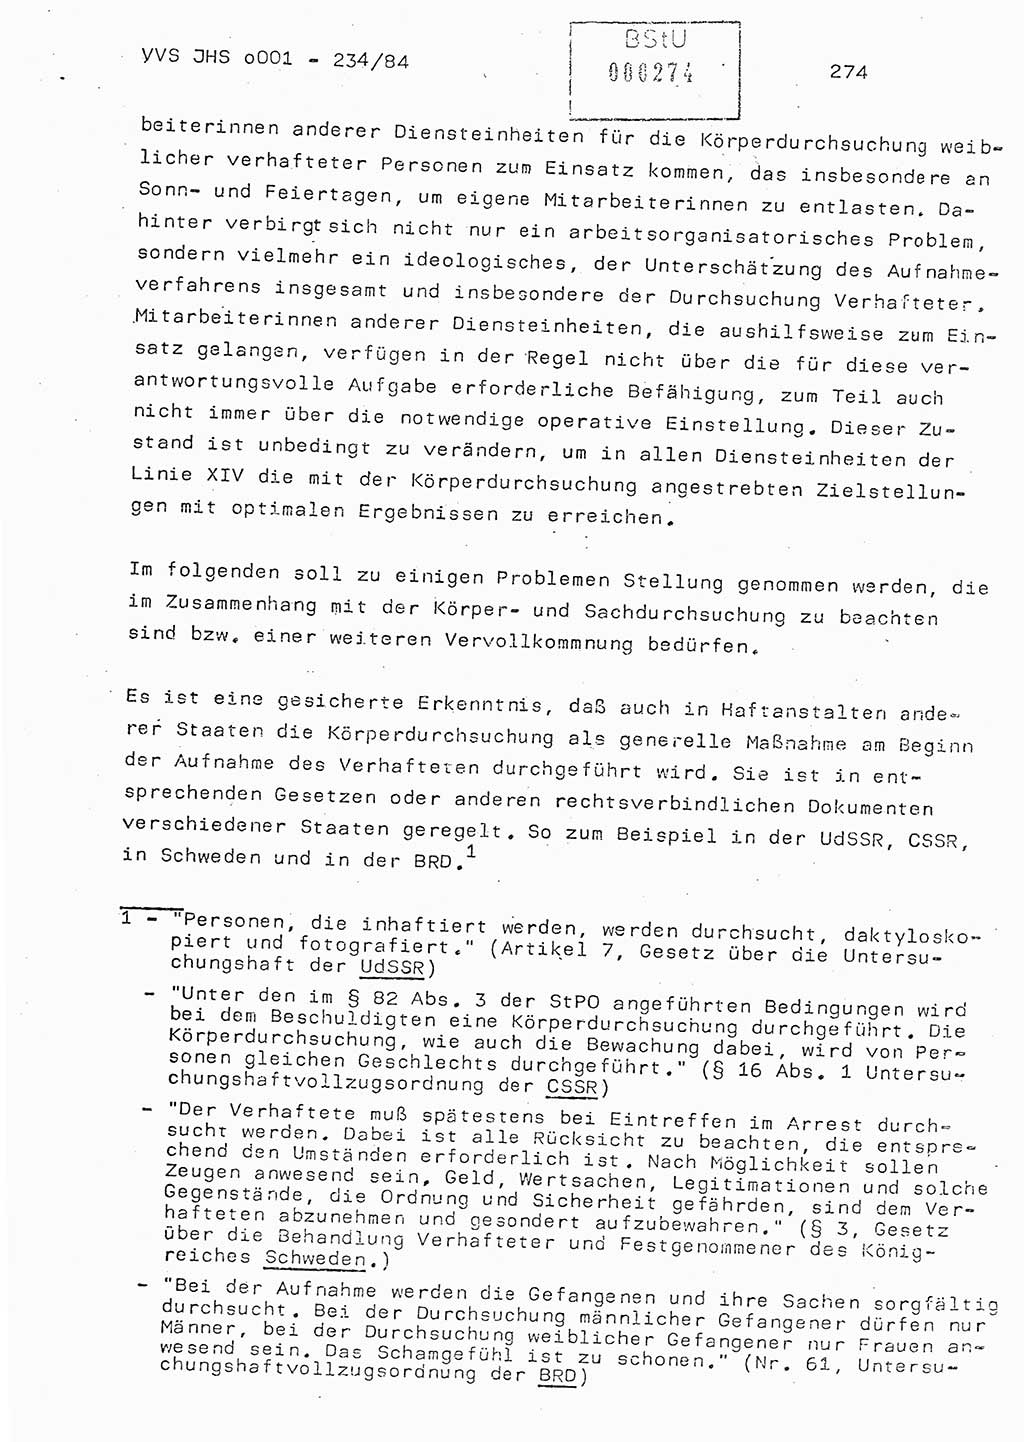 Dissertation Oberst Siegfried Rataizick (Abt. ⅩⅣ), Oberstleutnant Volkmar Heinz (Abt. ⅩⅣ), Oberstleutnant Werner Stein (HA Ⅸ), Hauptmann Heinz Conrad (JHS), Ministerium für Staatssicherheit (MfS) [Deutsche Demokratische Republik (DDR)], Juristische Hochschule (JHS), Vertrauliche Verschlußsache (VVS) o001-234/84, Potsdam 1984, Seite 274 (Diss. MfS DDR JHS VVS o001-234/84 1984, S. 274)